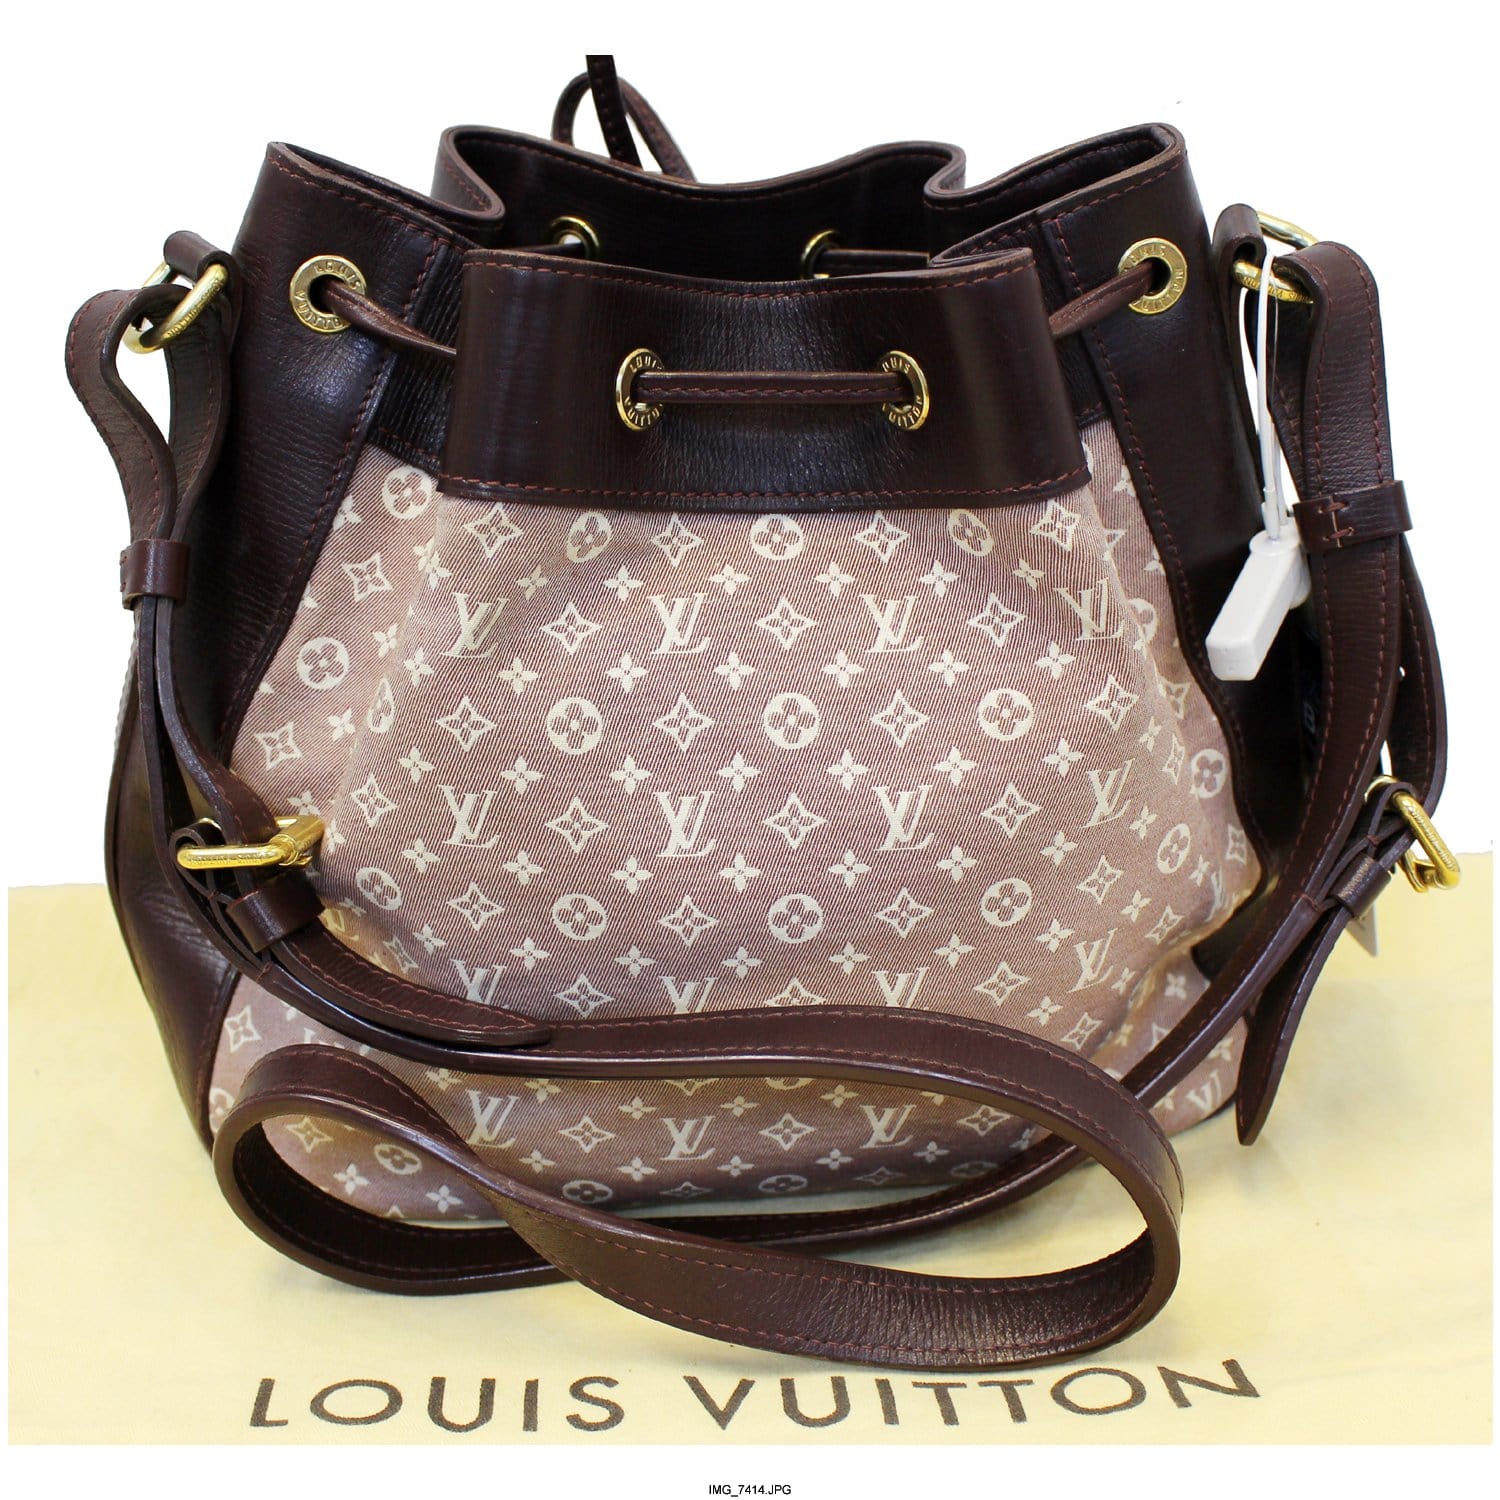 Louis Vuitton Encre Monogram Idylle Canvas Ballade MM Bag